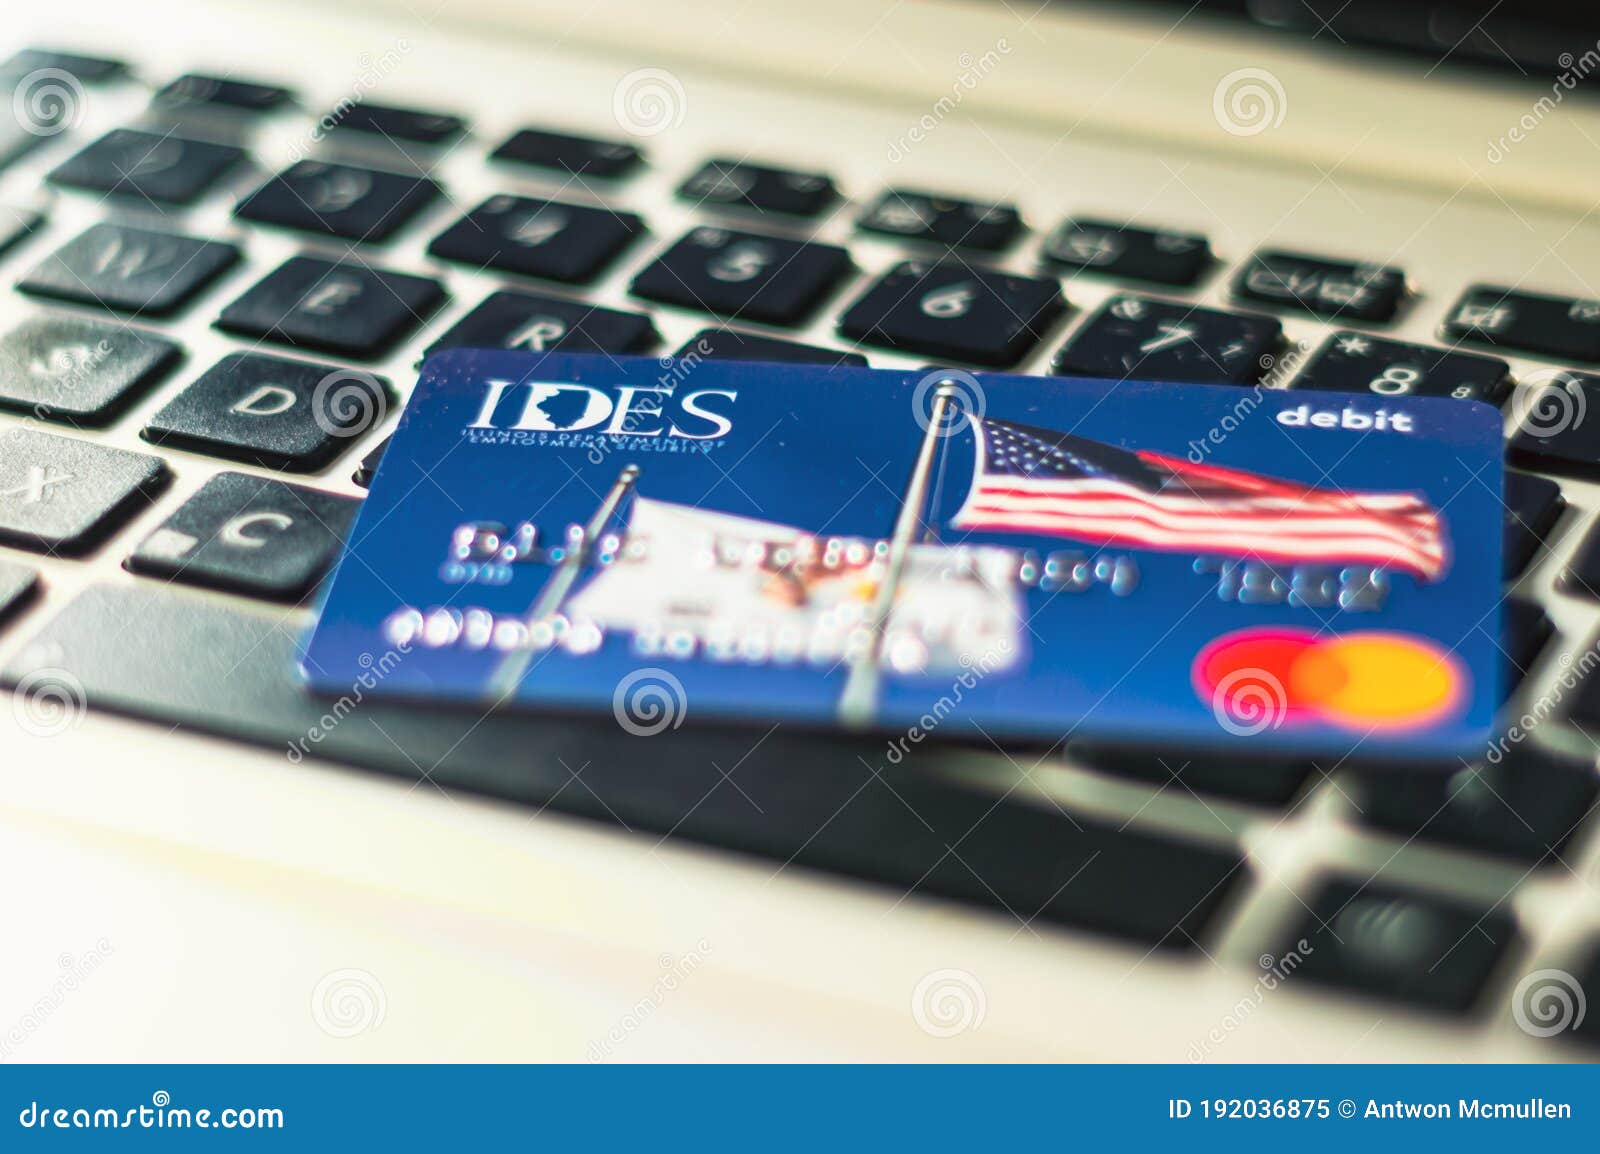 debit card unemployment insurance payments illinois chicago usa july debit card unemployment insurance payments 192036875